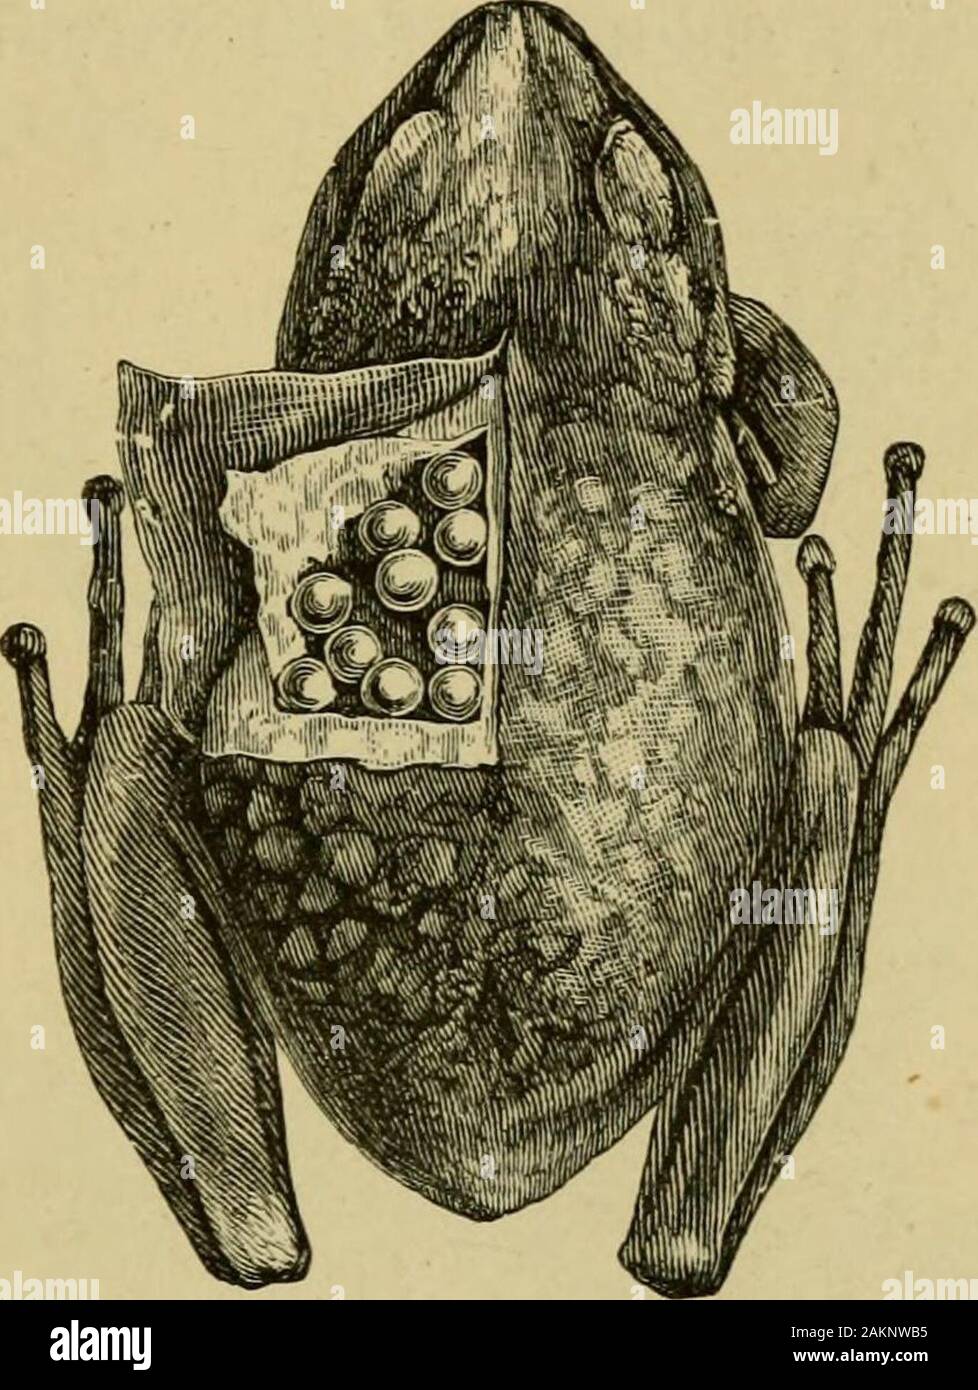 La grenouille rousse . (Au moins pendant la journée) jusqu'à la période lorsque les jeunes sont prêts à quitter le^ ^g. Heseeks ensuite l'eau, dans laquelle il n'a pas plongé manyminutes quand le jeune éclata et nager,et lui, ayant lui-même le remainsof débarrassés de l'ova, reprend son apparence normale. Certaines grenouilles (formant un groupe très nombreux) aretermed Tree-Frogs, de leur adaptation à l'arboreallife au moyen de la dilatation de l'embout de succion dans thedigits disques, par lequel ils peuvent adhereto feuilles. L'un d'entre eux, la commune de green (yHyla Tree-Frog arborea), s'étend sur l'Europe, l'Asie,et Banque D'Images